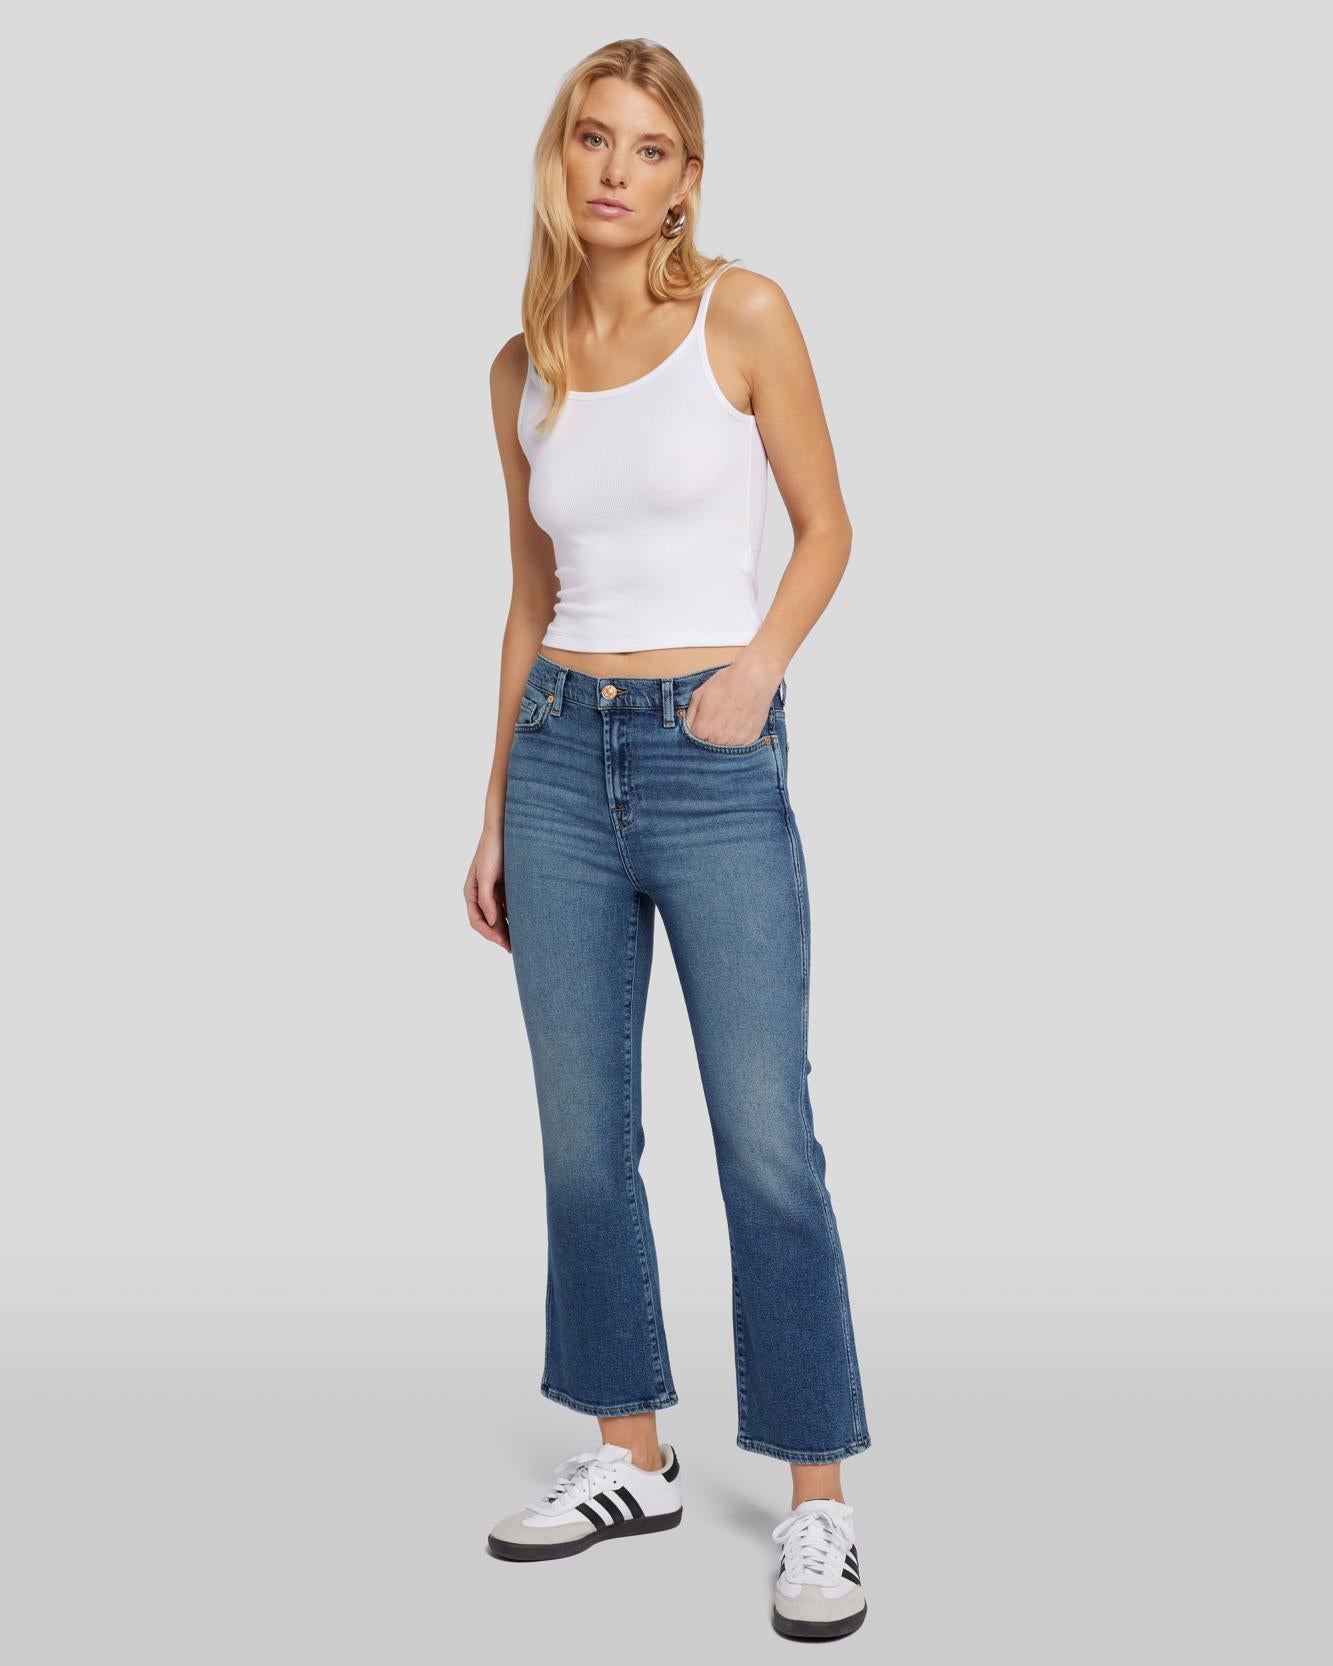 Women's Luxe Vintage Jeans - Denim for Women